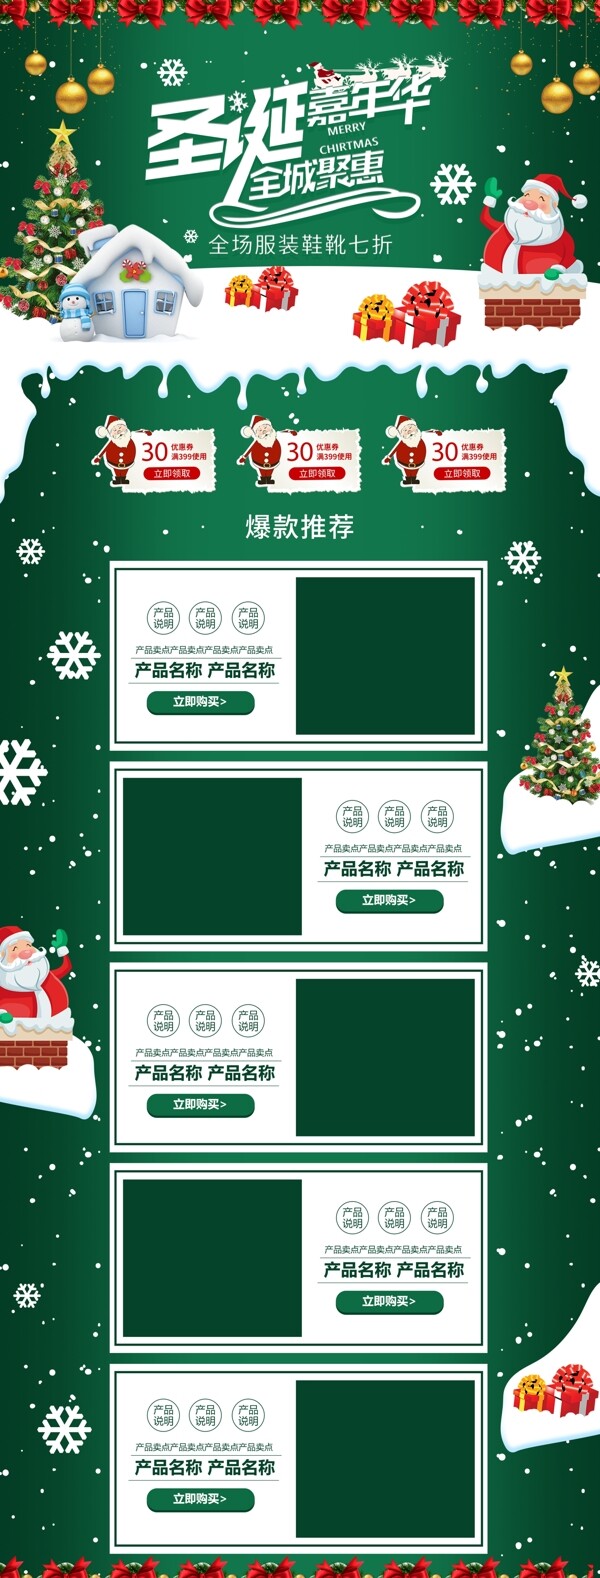 绿色清新礼盒圣诞嘉年华服装鞋业淘宝首页